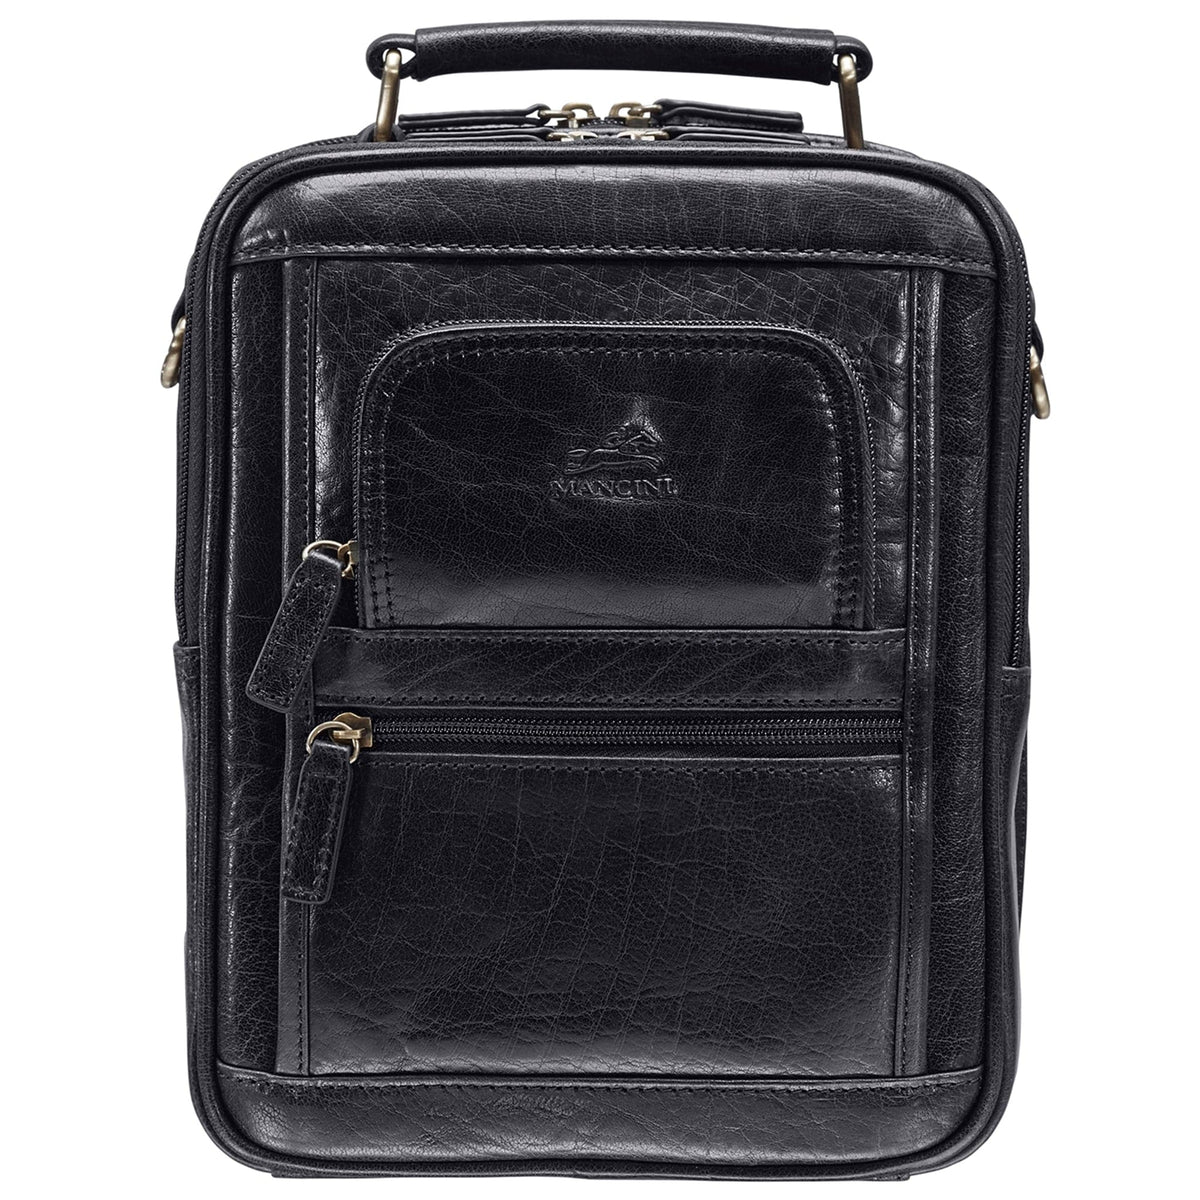 Mancini Arizona Large Unisex Bag with Zippered Rear Organizer